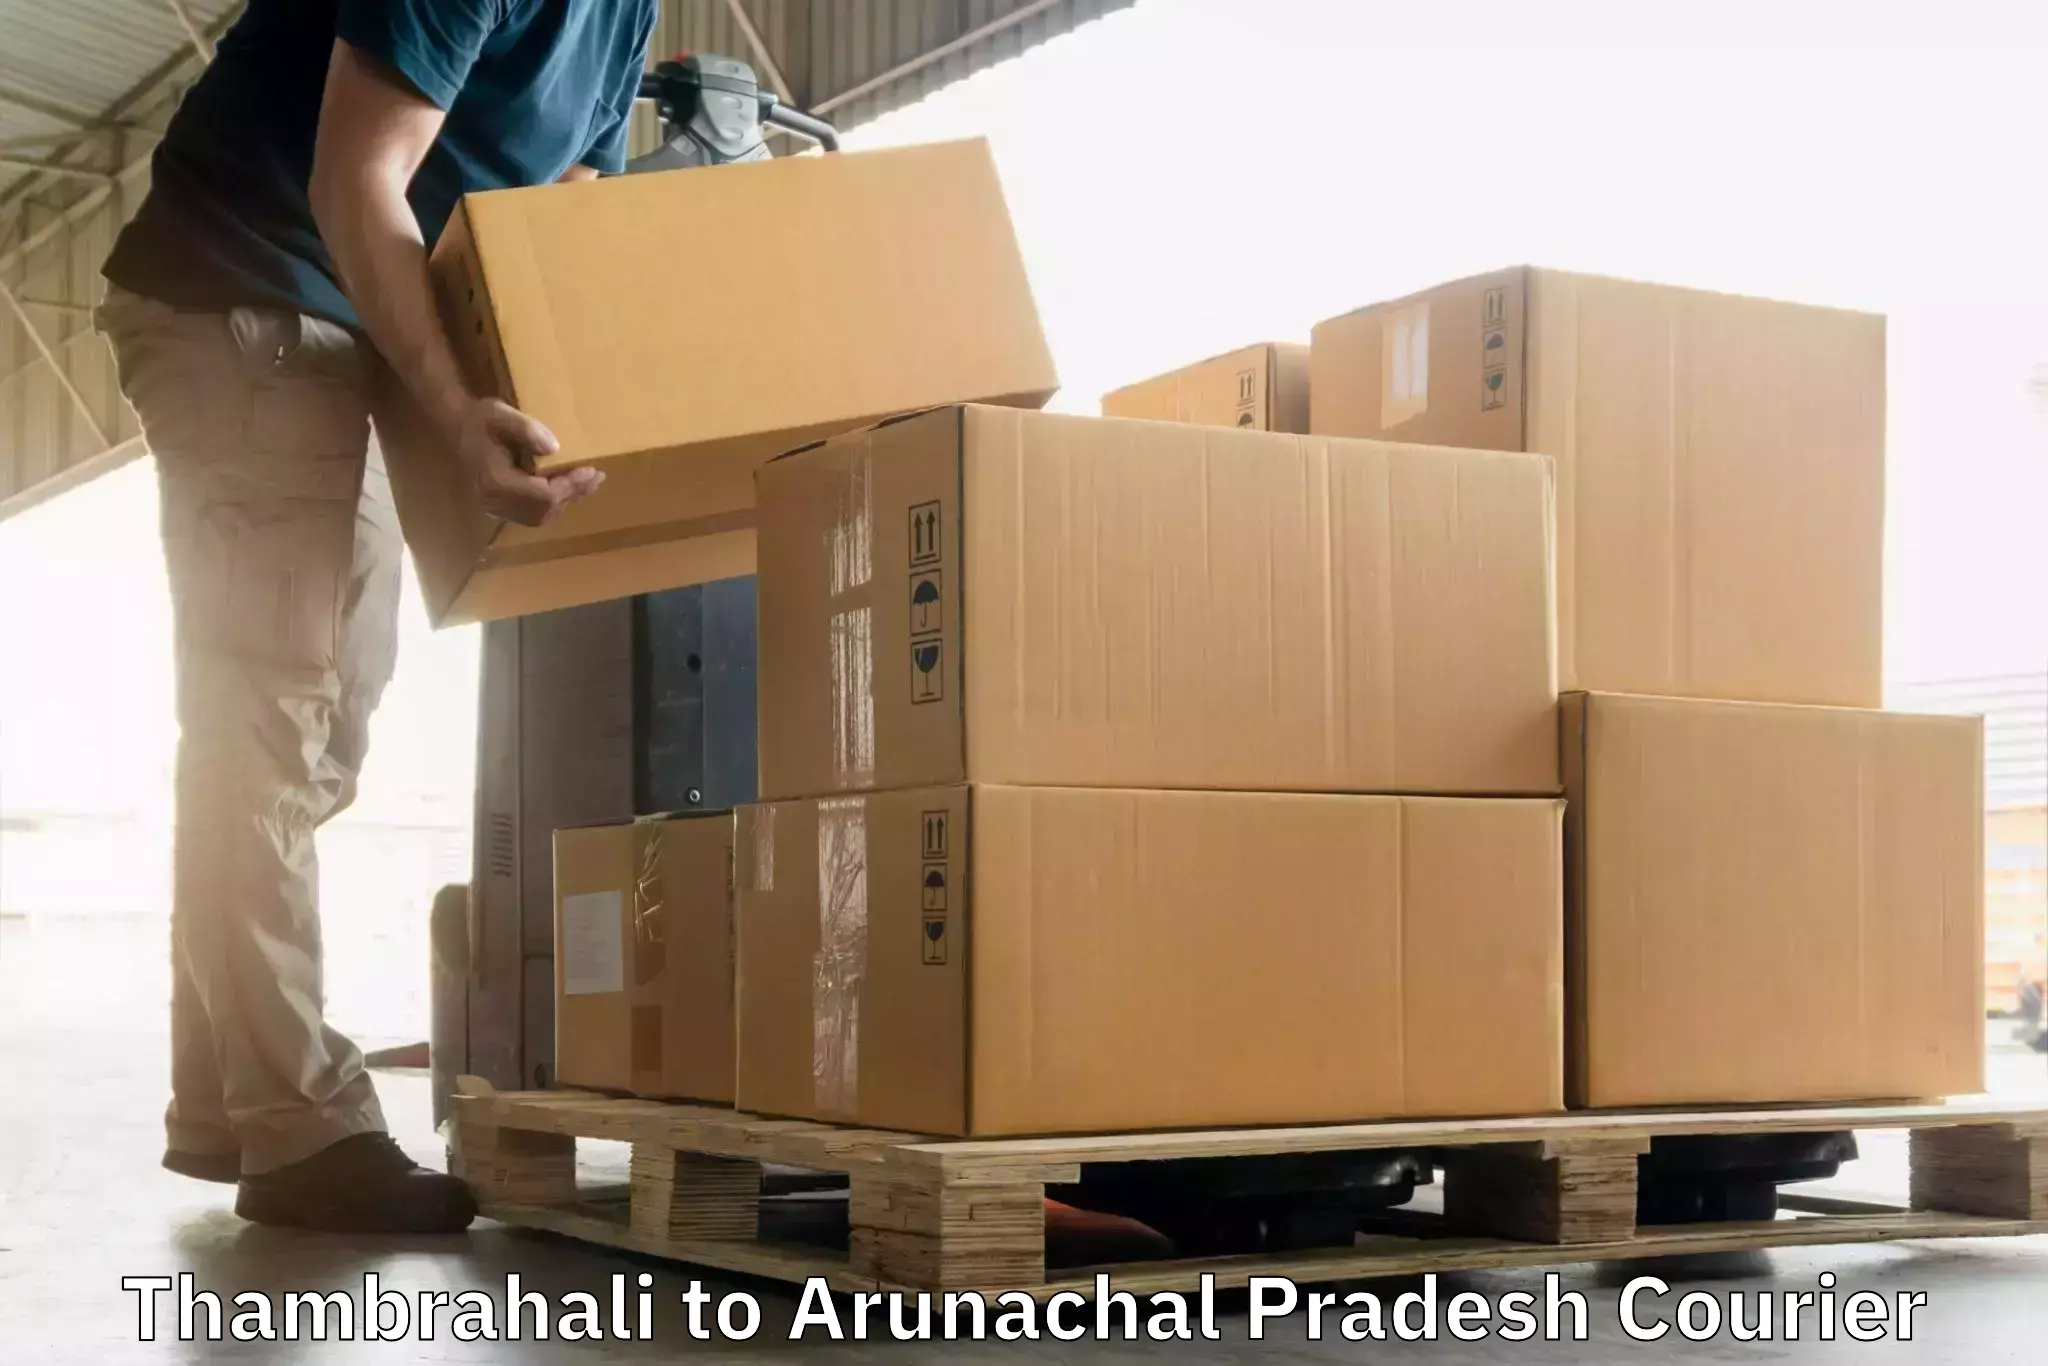 Express package handling Thambrahali to Arunachal Pradesh